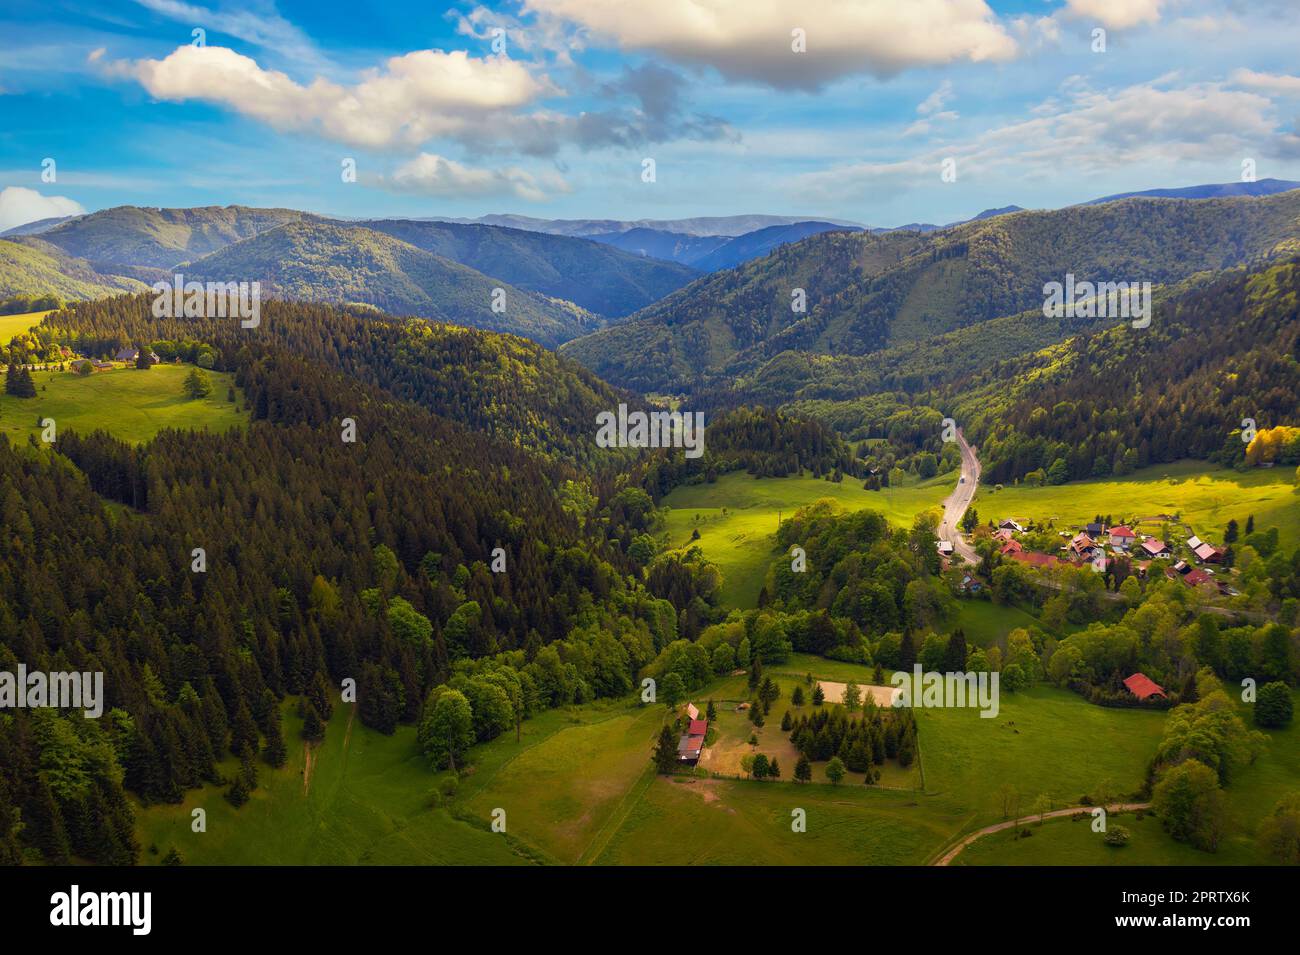 Aerial View of Donovaly, part Hanesy in Slovakia Stock Photo